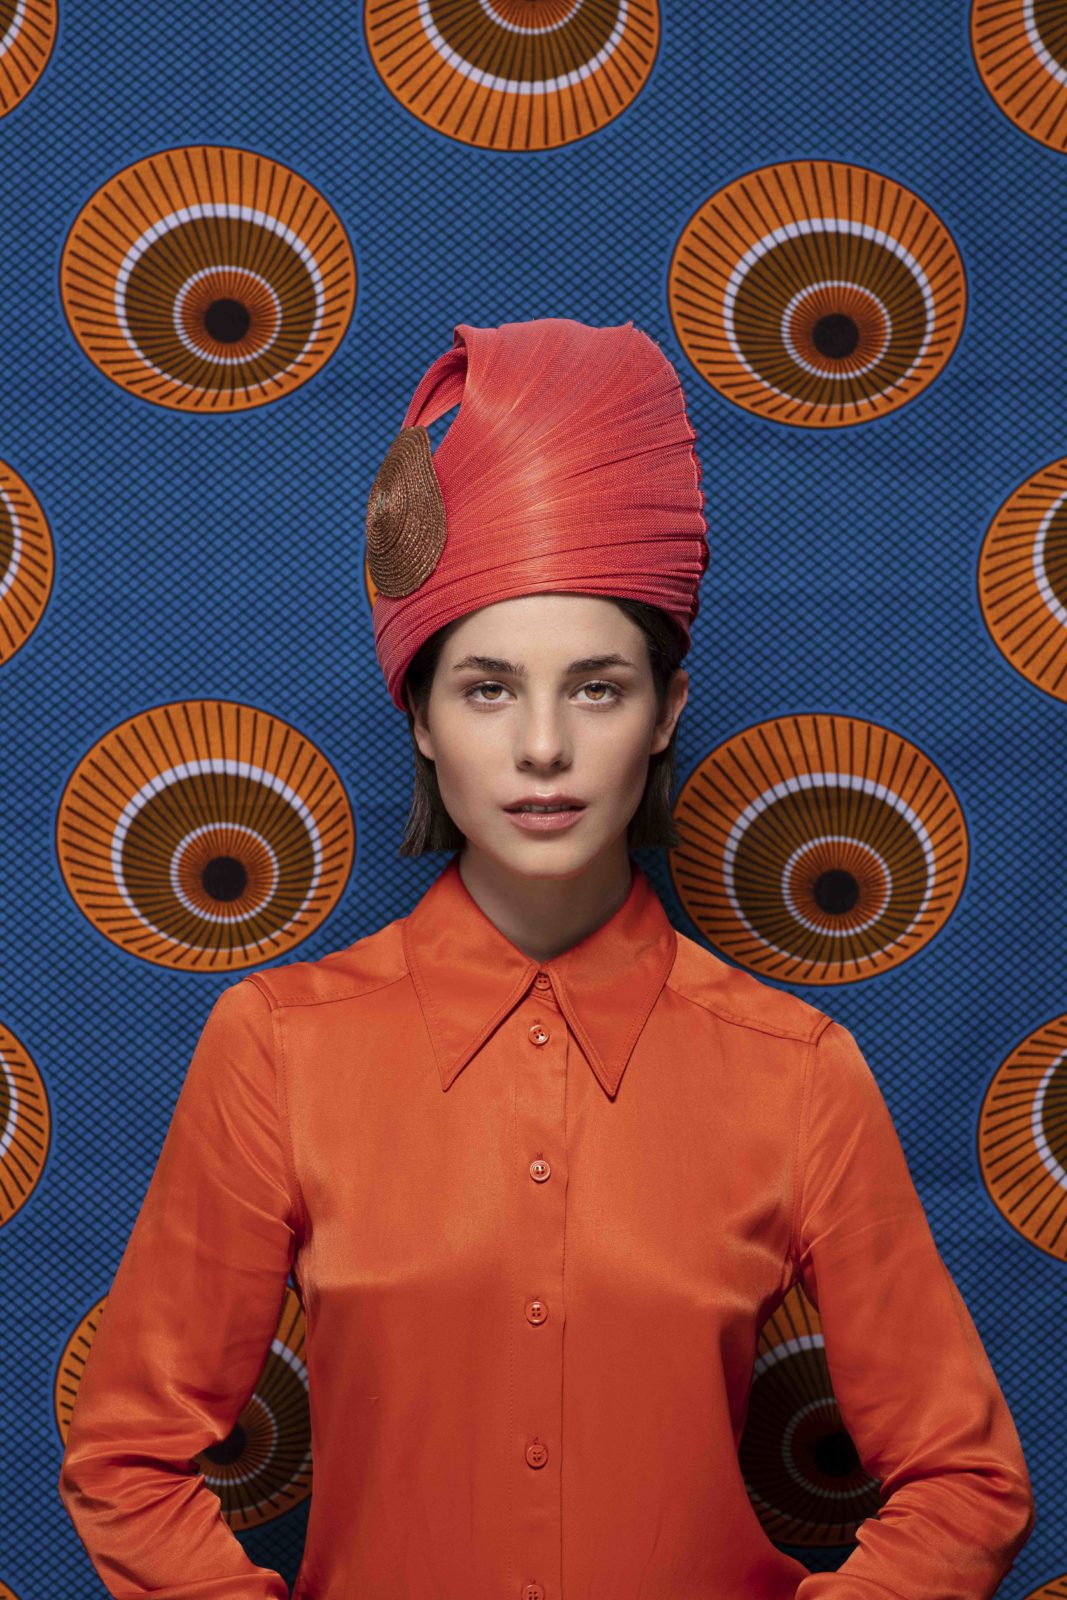 découvrez notre turban imaginé et conçu par la modiste italienne veronica marucci